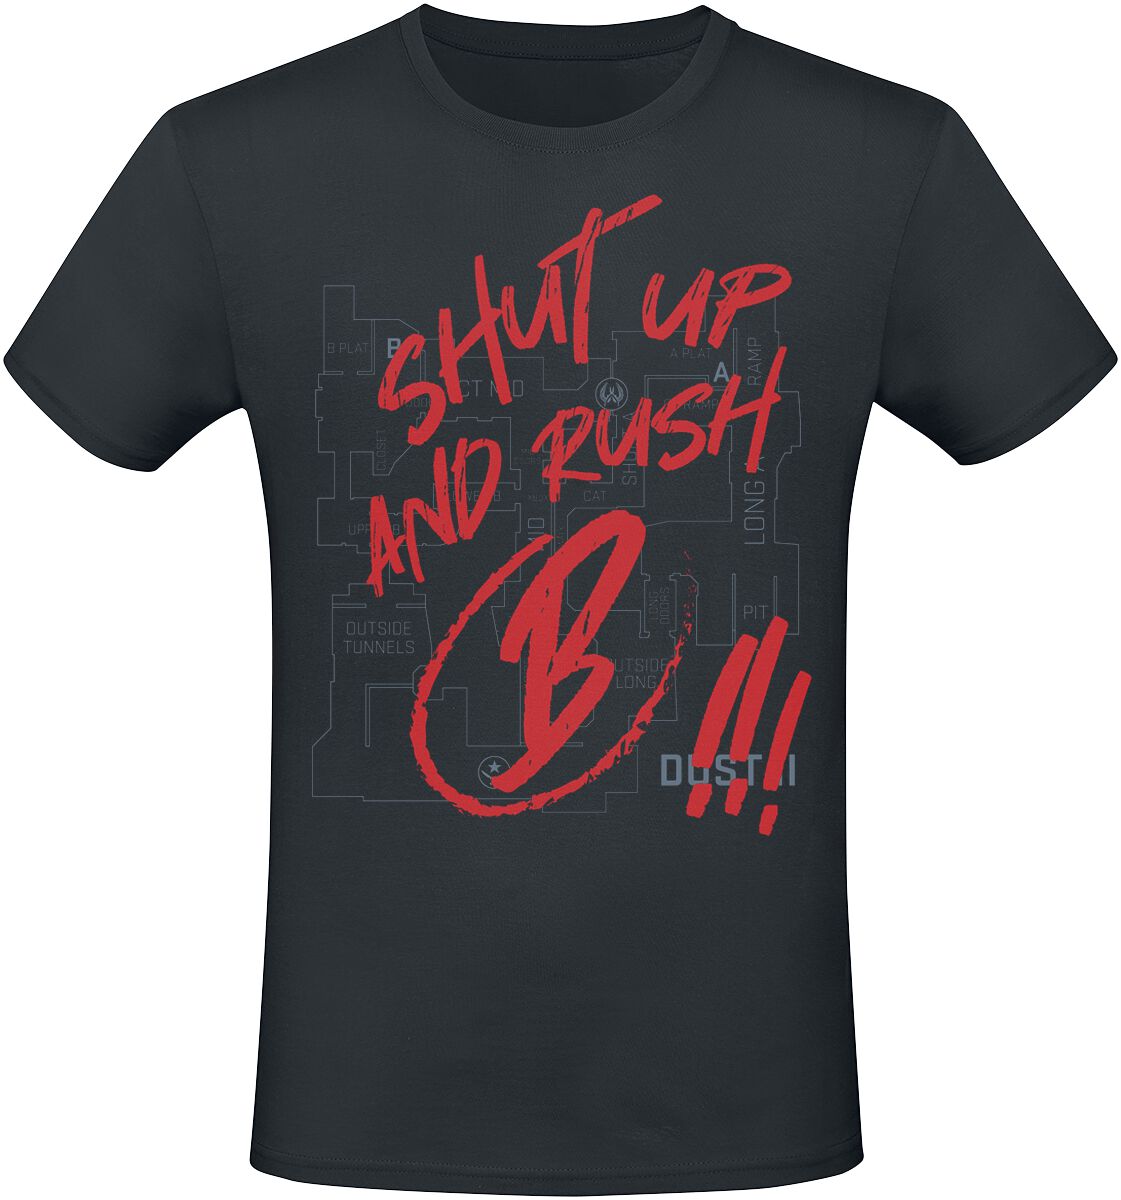 Counter-Strike - Gaming T-Shirt - 2 - Shut Up And Rush B !!! - S bis XXL - für Männer - Größe M - schwarz  - EMP exklusives Merchandise!